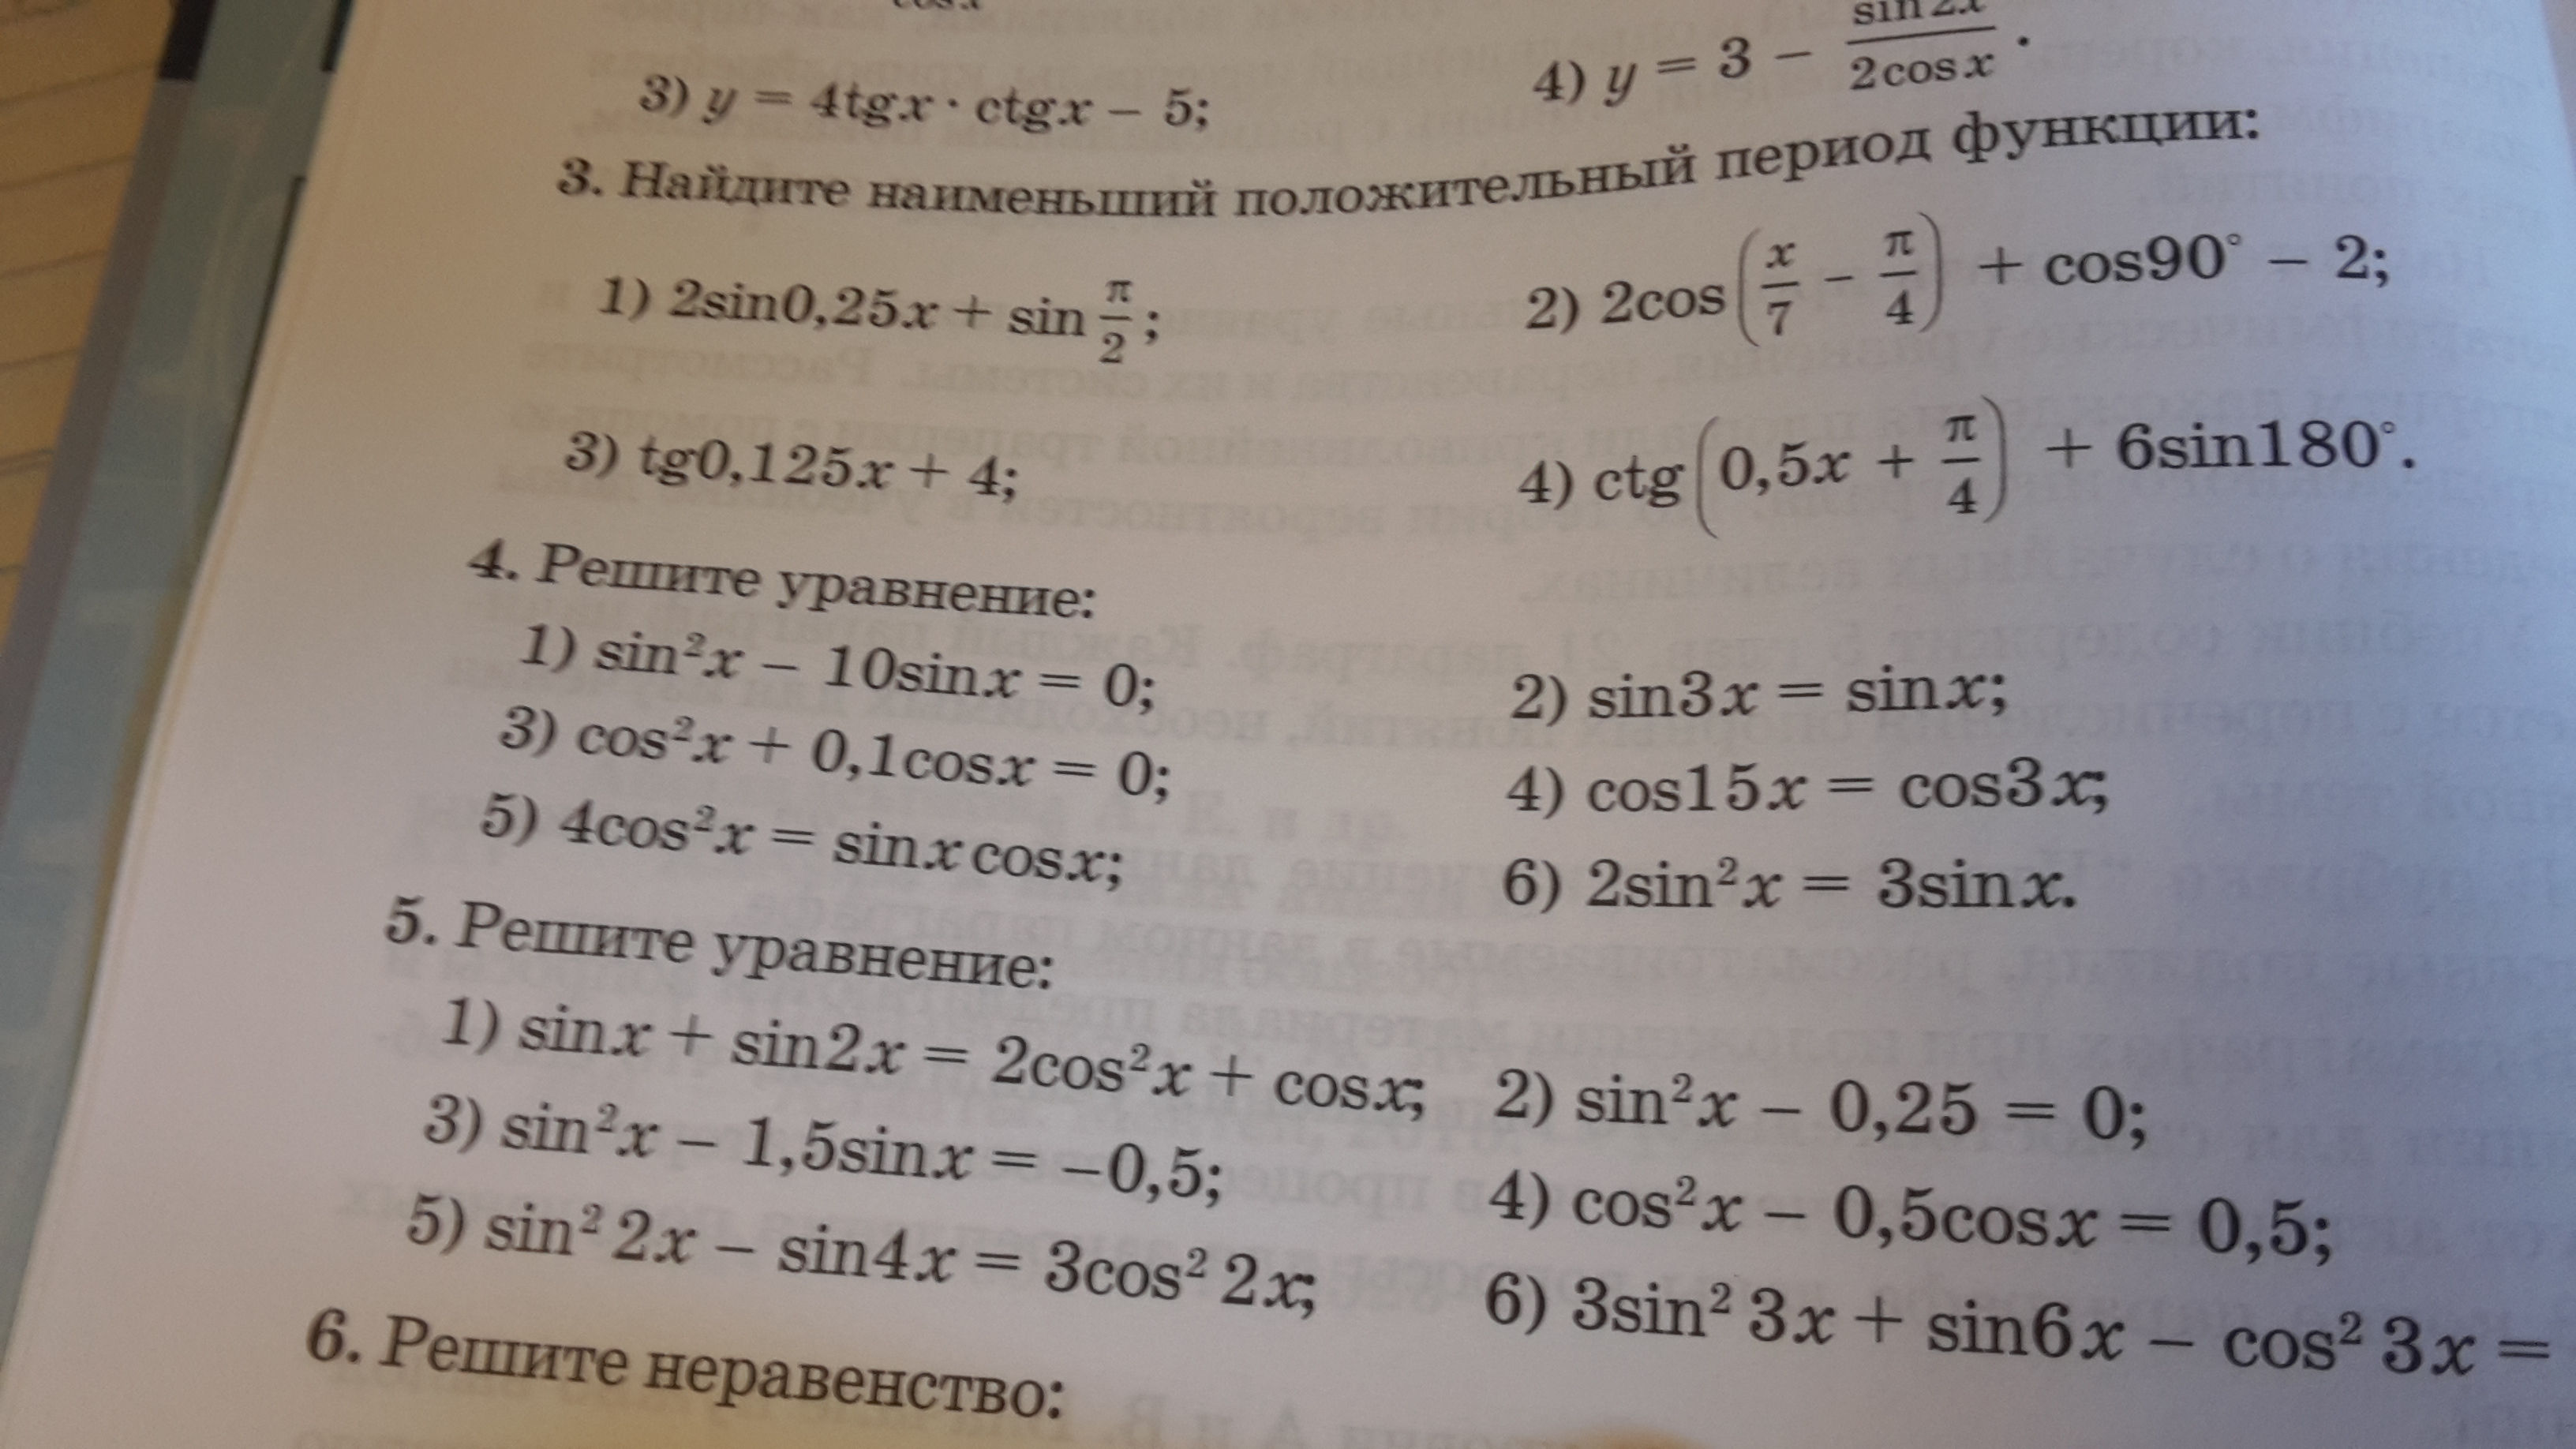 2cos 2x 2 0. Решить уравнение cos x 2. Уравнение cos x a. Sin3x-cos3x корень из 2 sinx. Sin3x=cos.